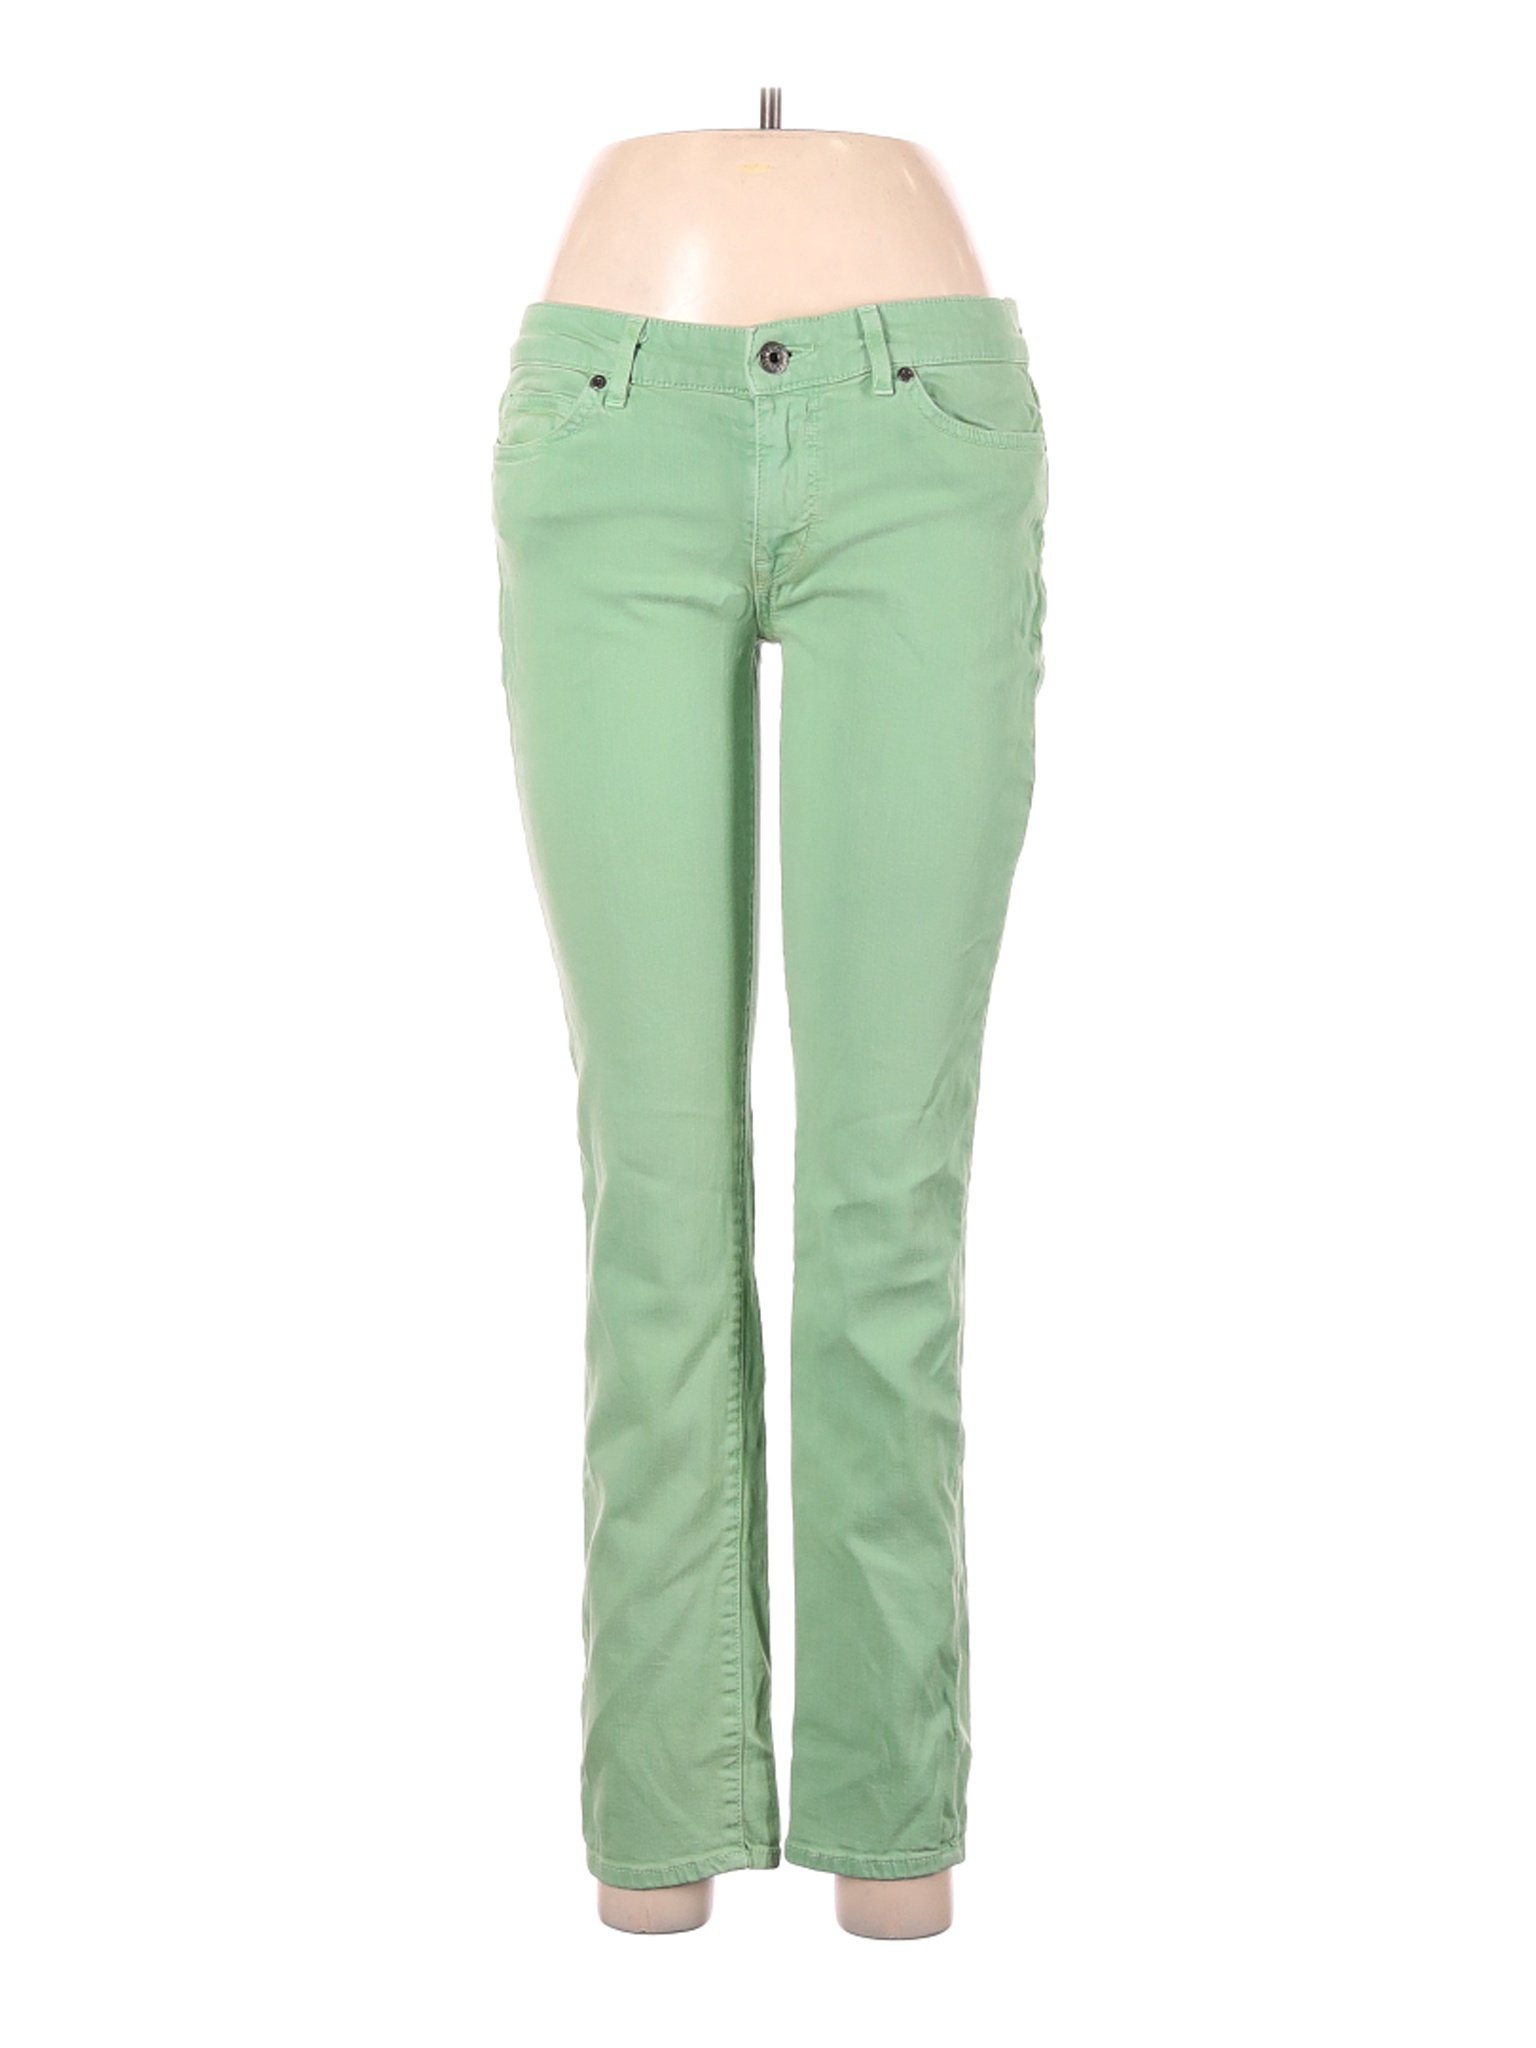 Rich & Skinny Women Green Jeans 29W | eBay